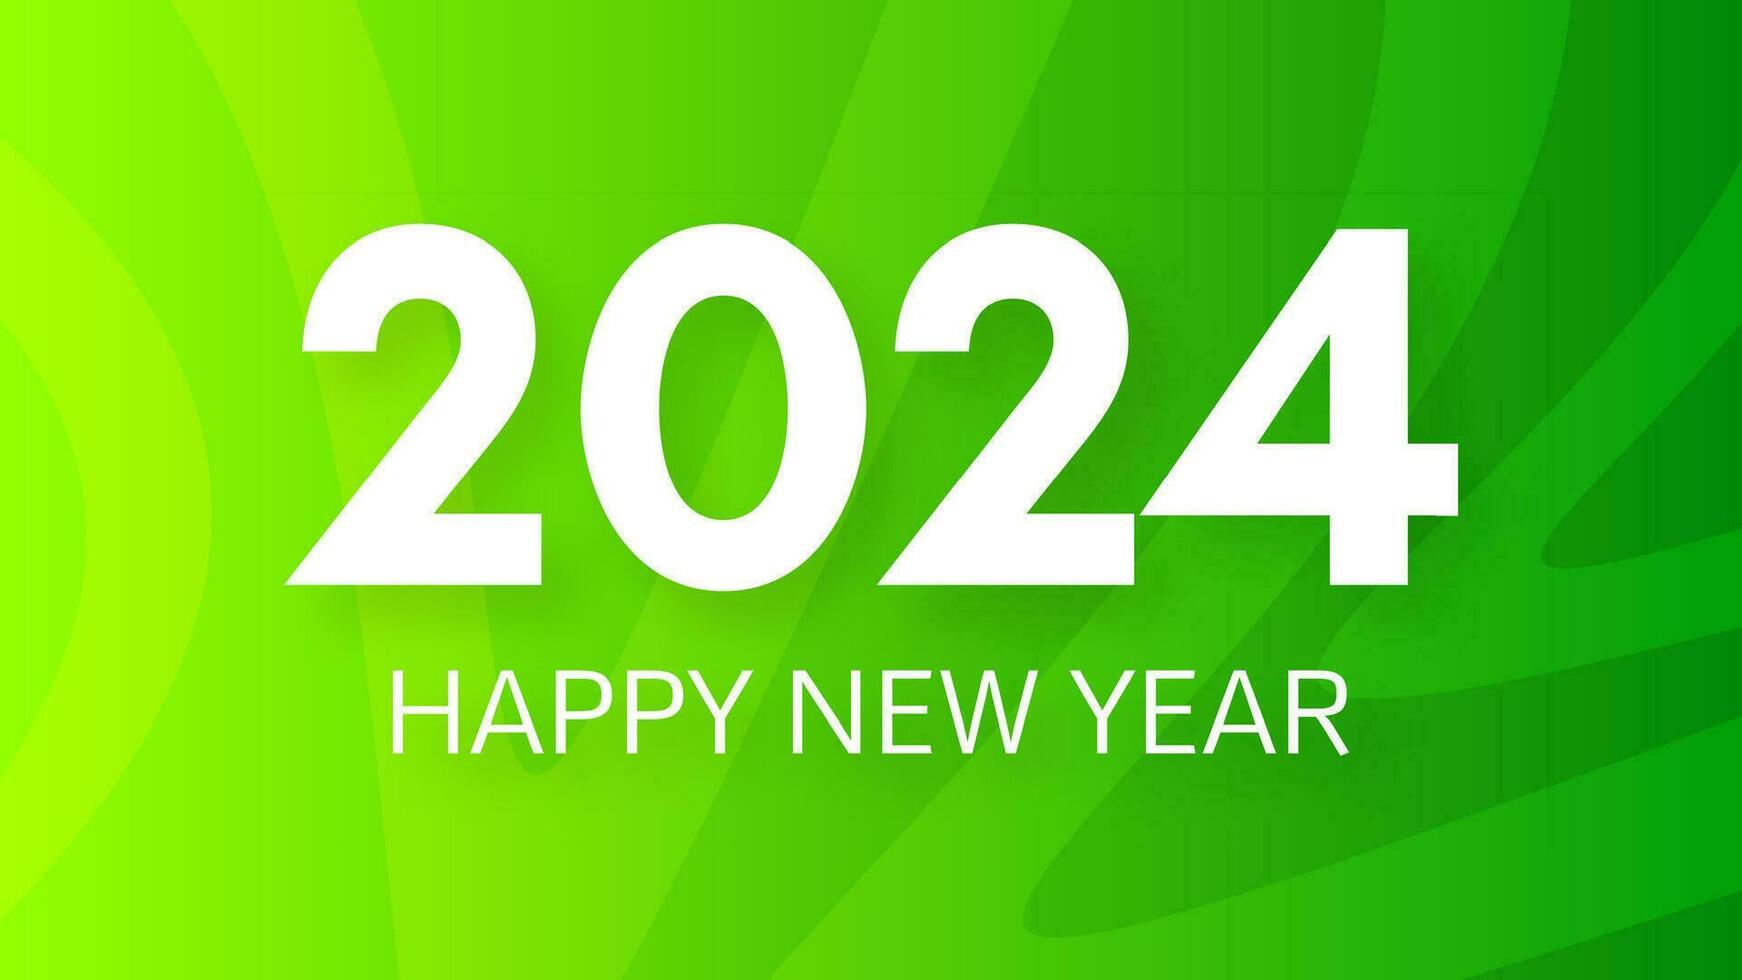 2024 glücklich Neu Jahr auf bunt Hintergrund vektor